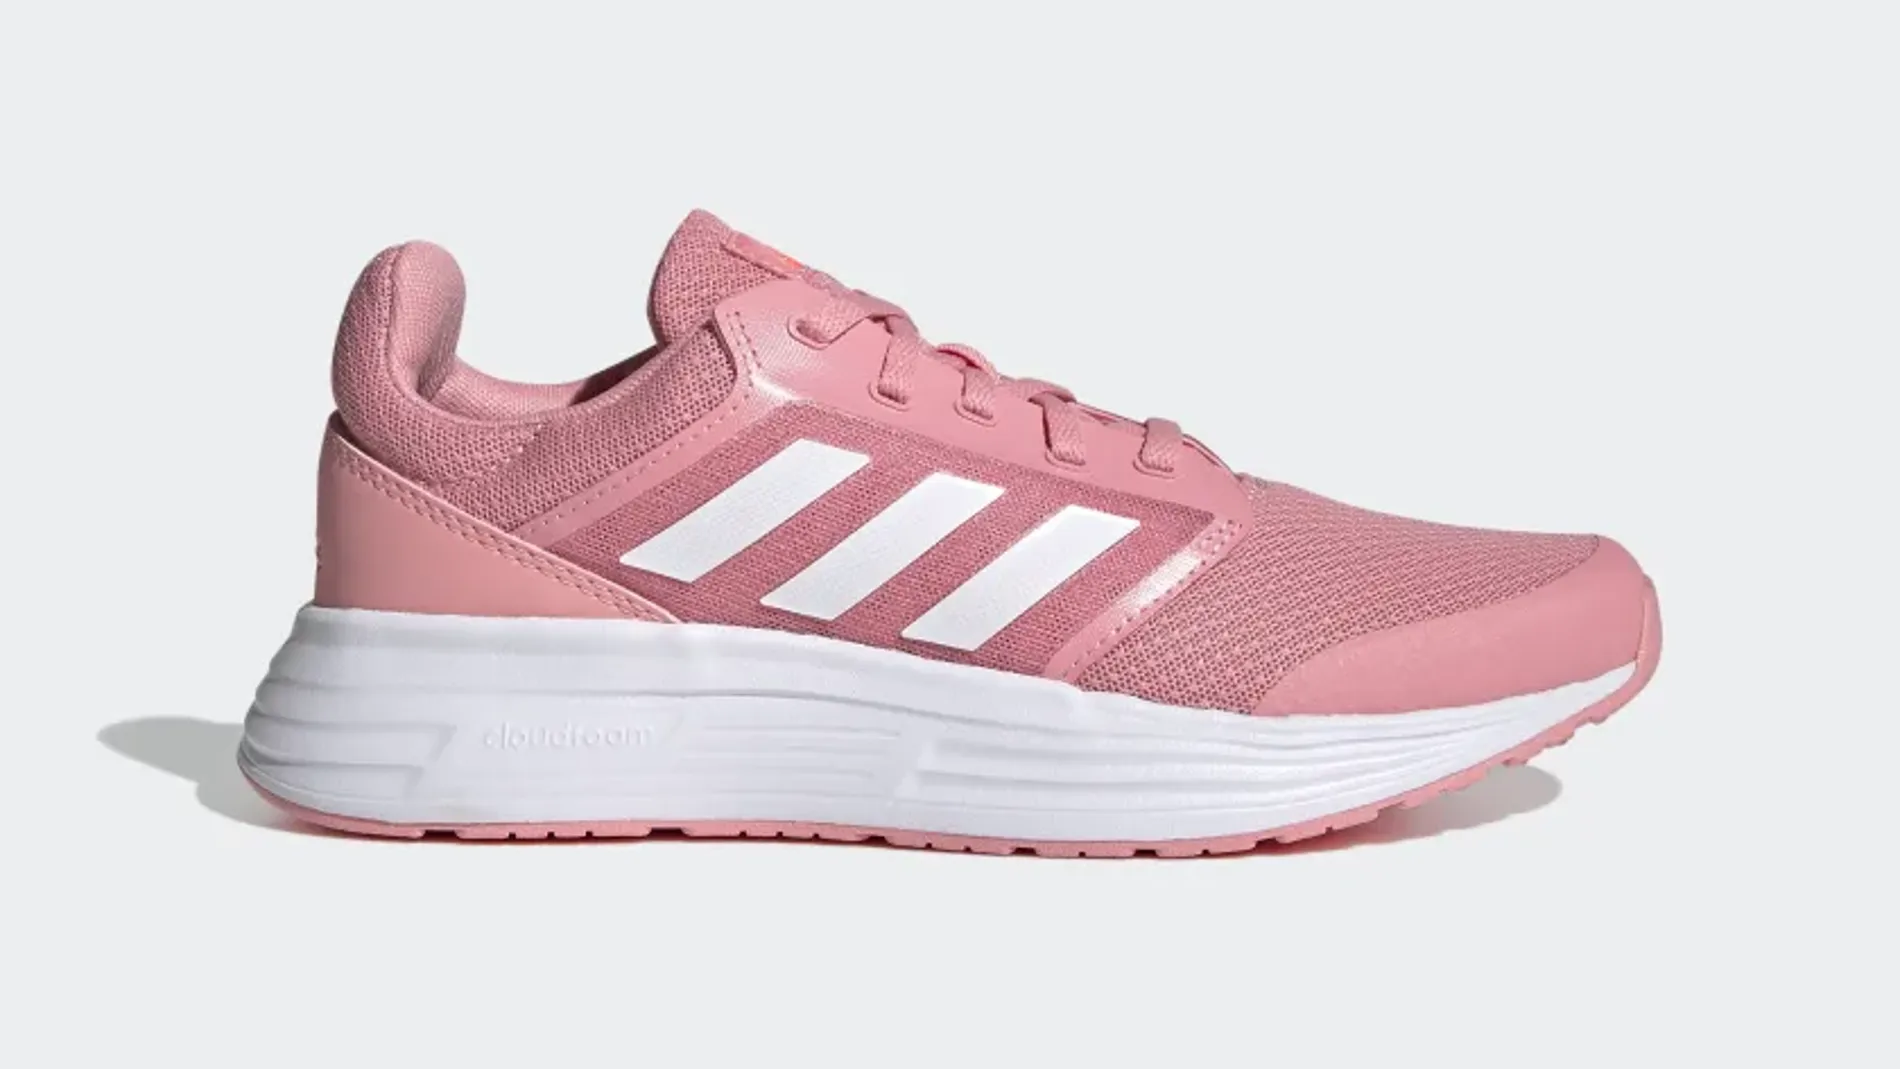 Rebajas y ofertas en zapatillas de running, por solo 35 euros en la web de Adidas